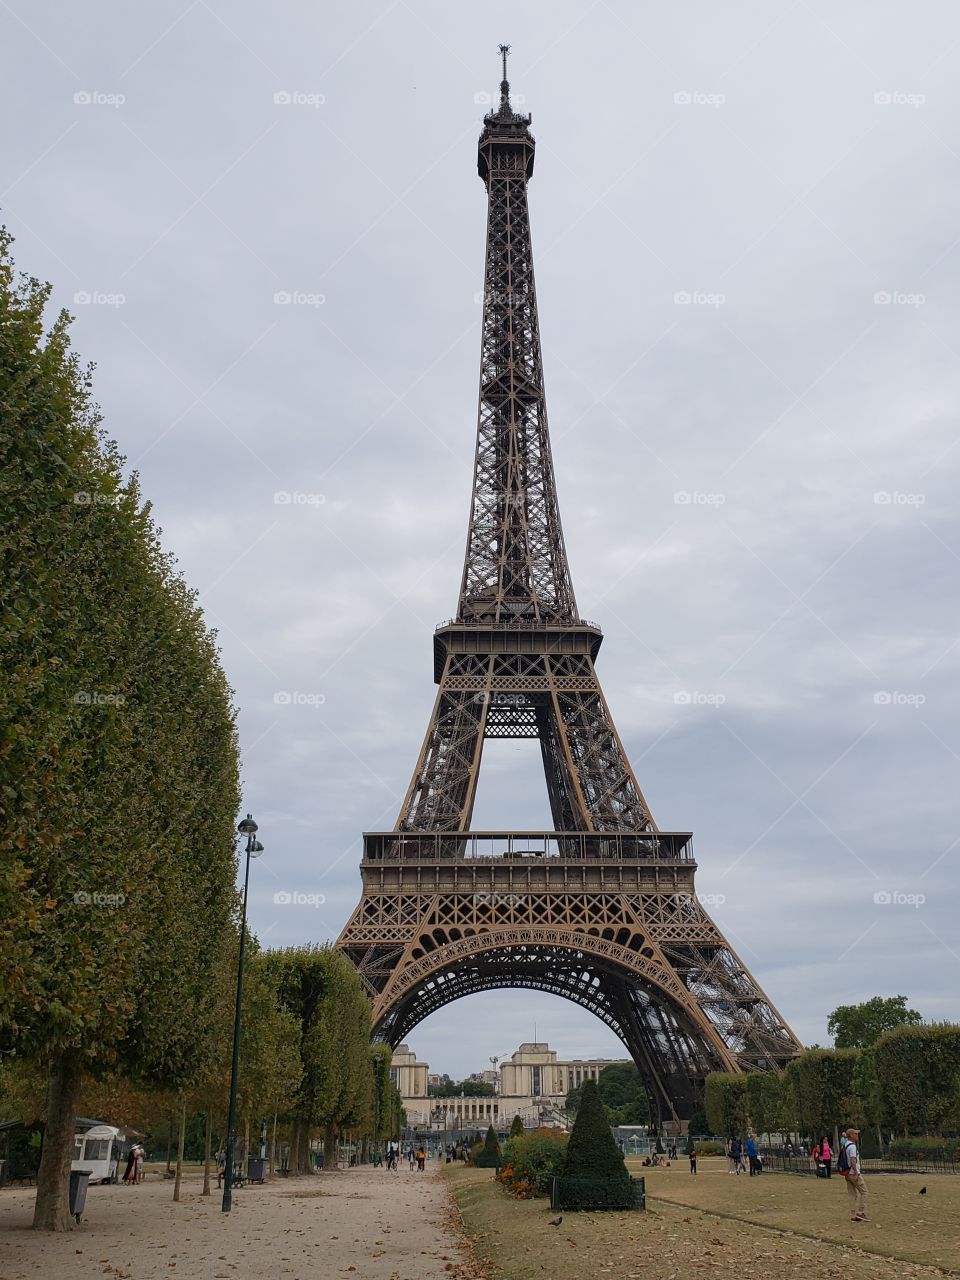 tanta calma y tanto alboroto rodean a esta impactante torre, símbolo de París